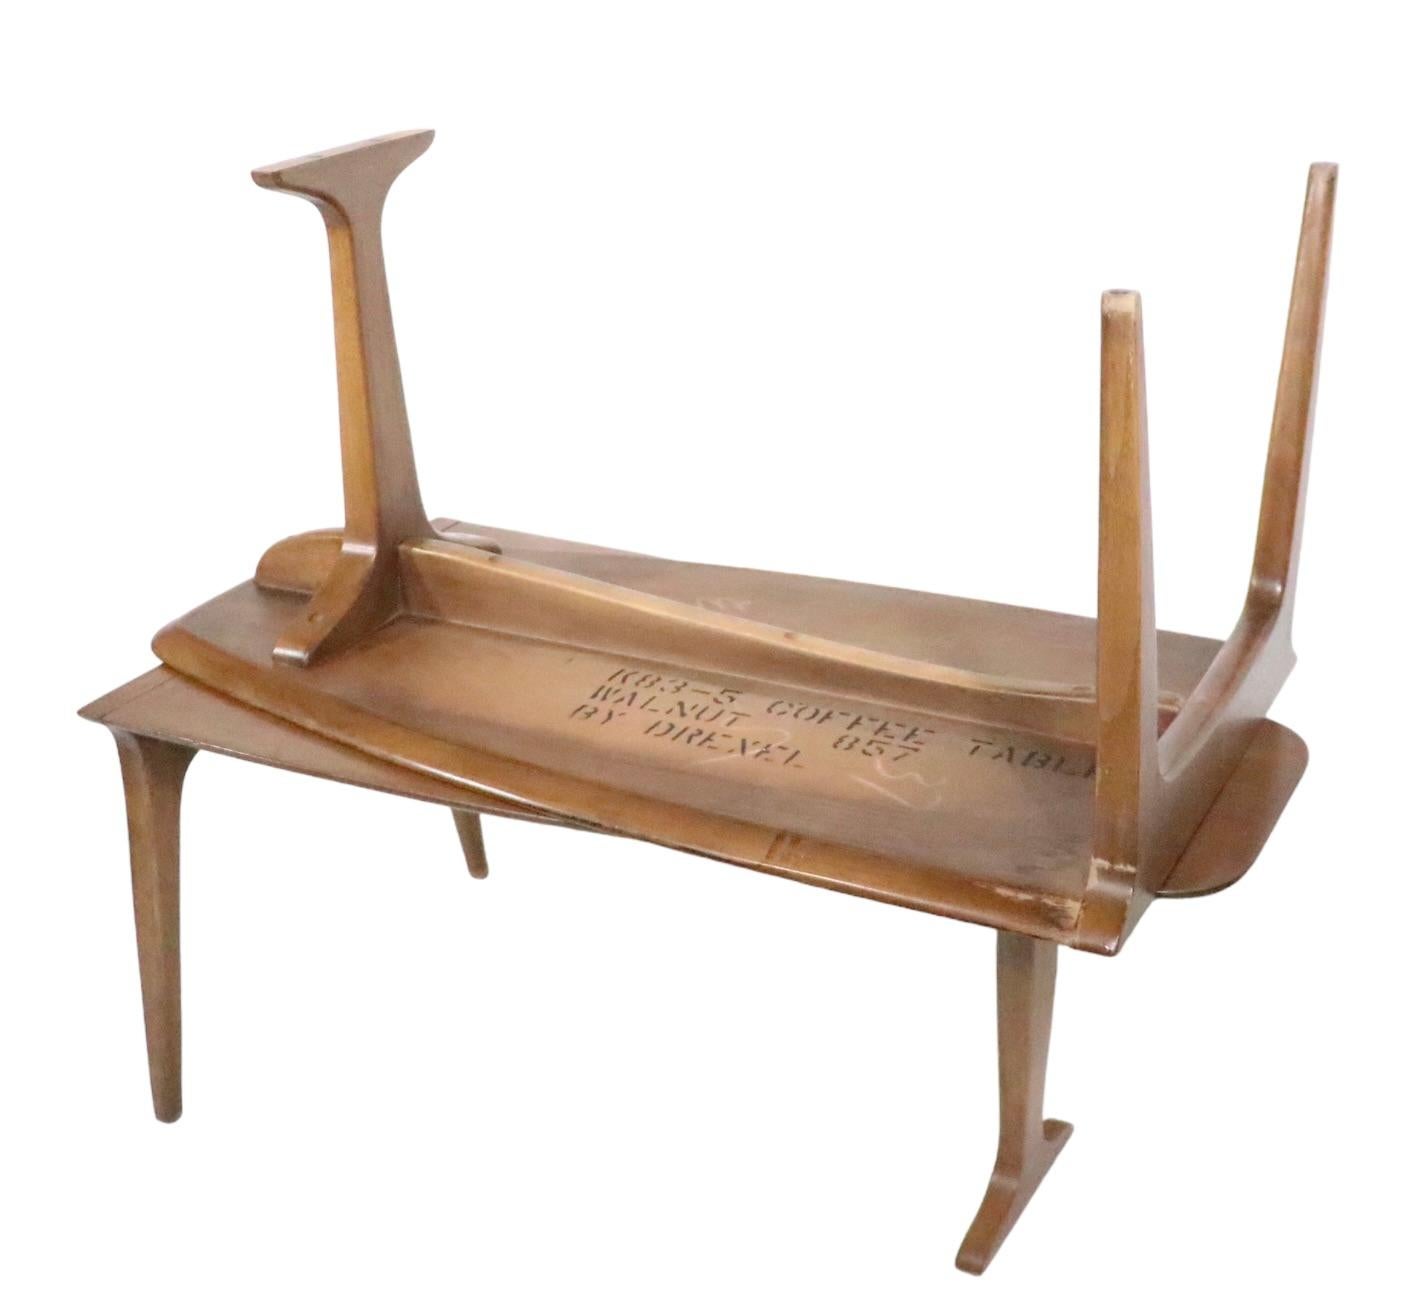 Seltener zweiteiliger Couchtisch, entworfen von John Van Koert für Drexel Furniture, als Teil ihrer Class Profile Serie, ca. 1960er Jahre.
 Da der Tisch aus zwei separaten Teilen besteht, kann er auch als End- oder Beistelltisch verwendet werden.